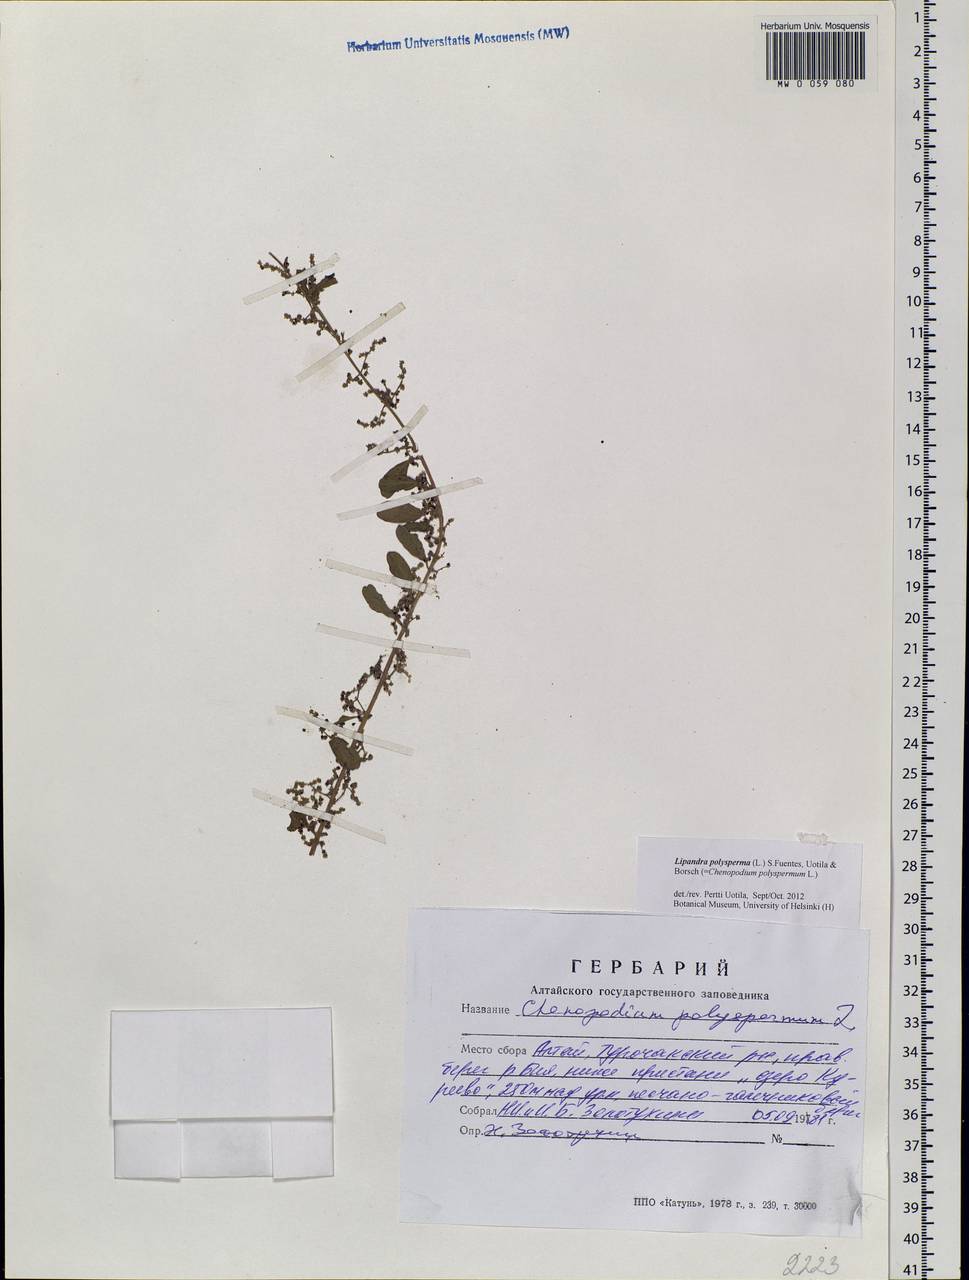 Lipandra polysperma (L.) S. Fuentes, Uotila & Borsch, Siberia, Altai & Sayany Mountains (S2) (Russia)